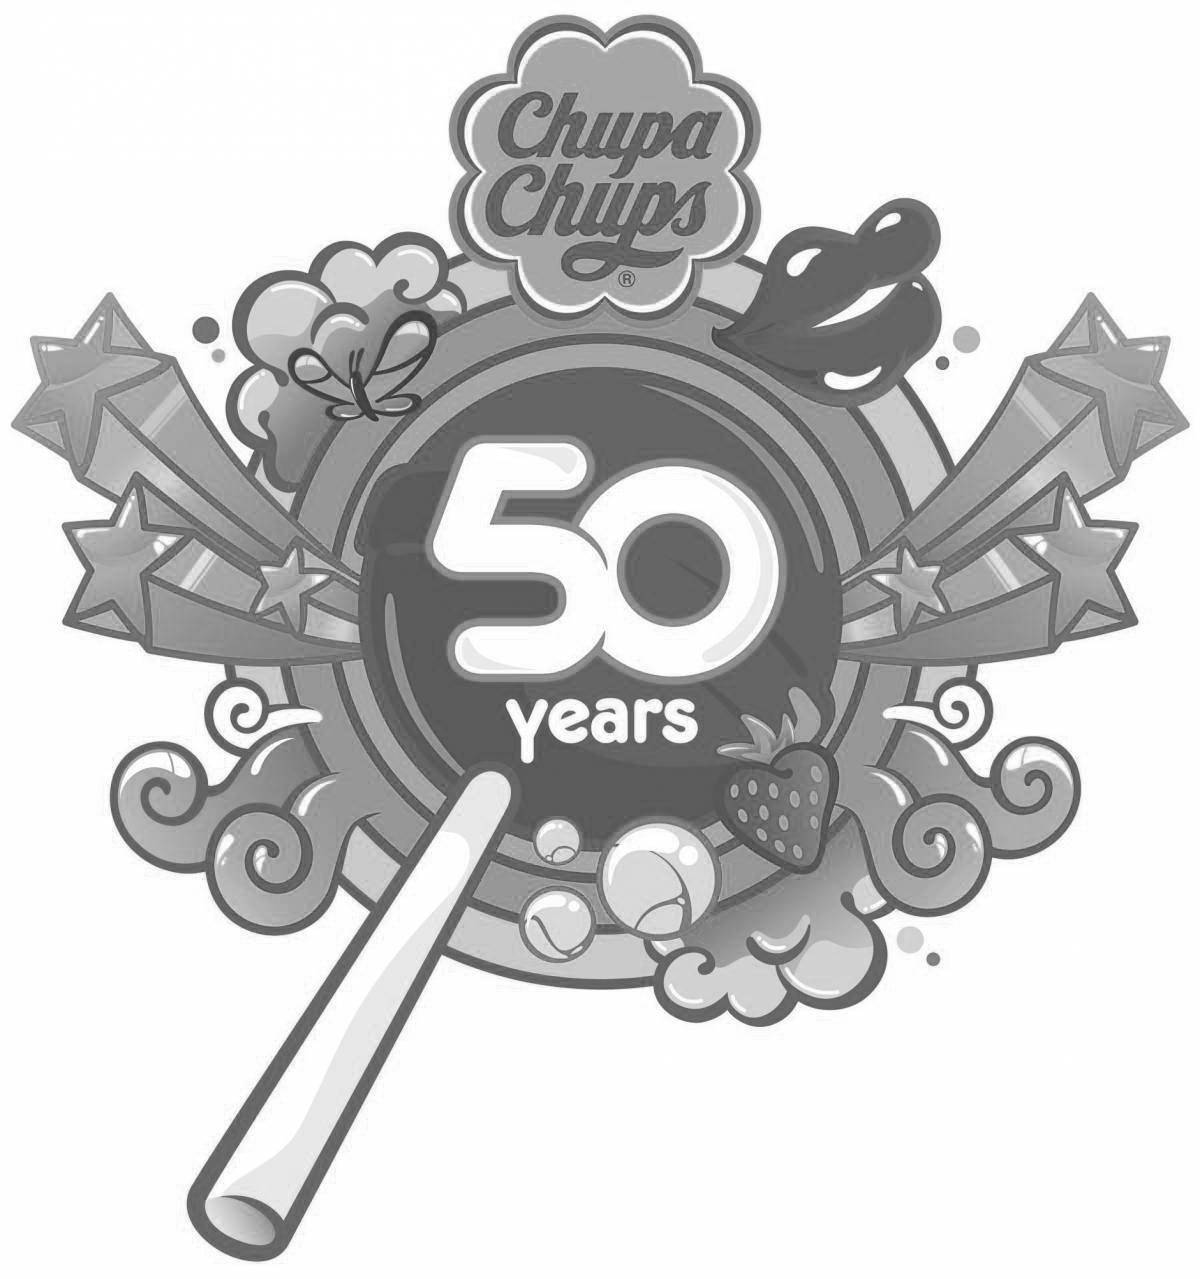 Chupa chups logo bright coloring